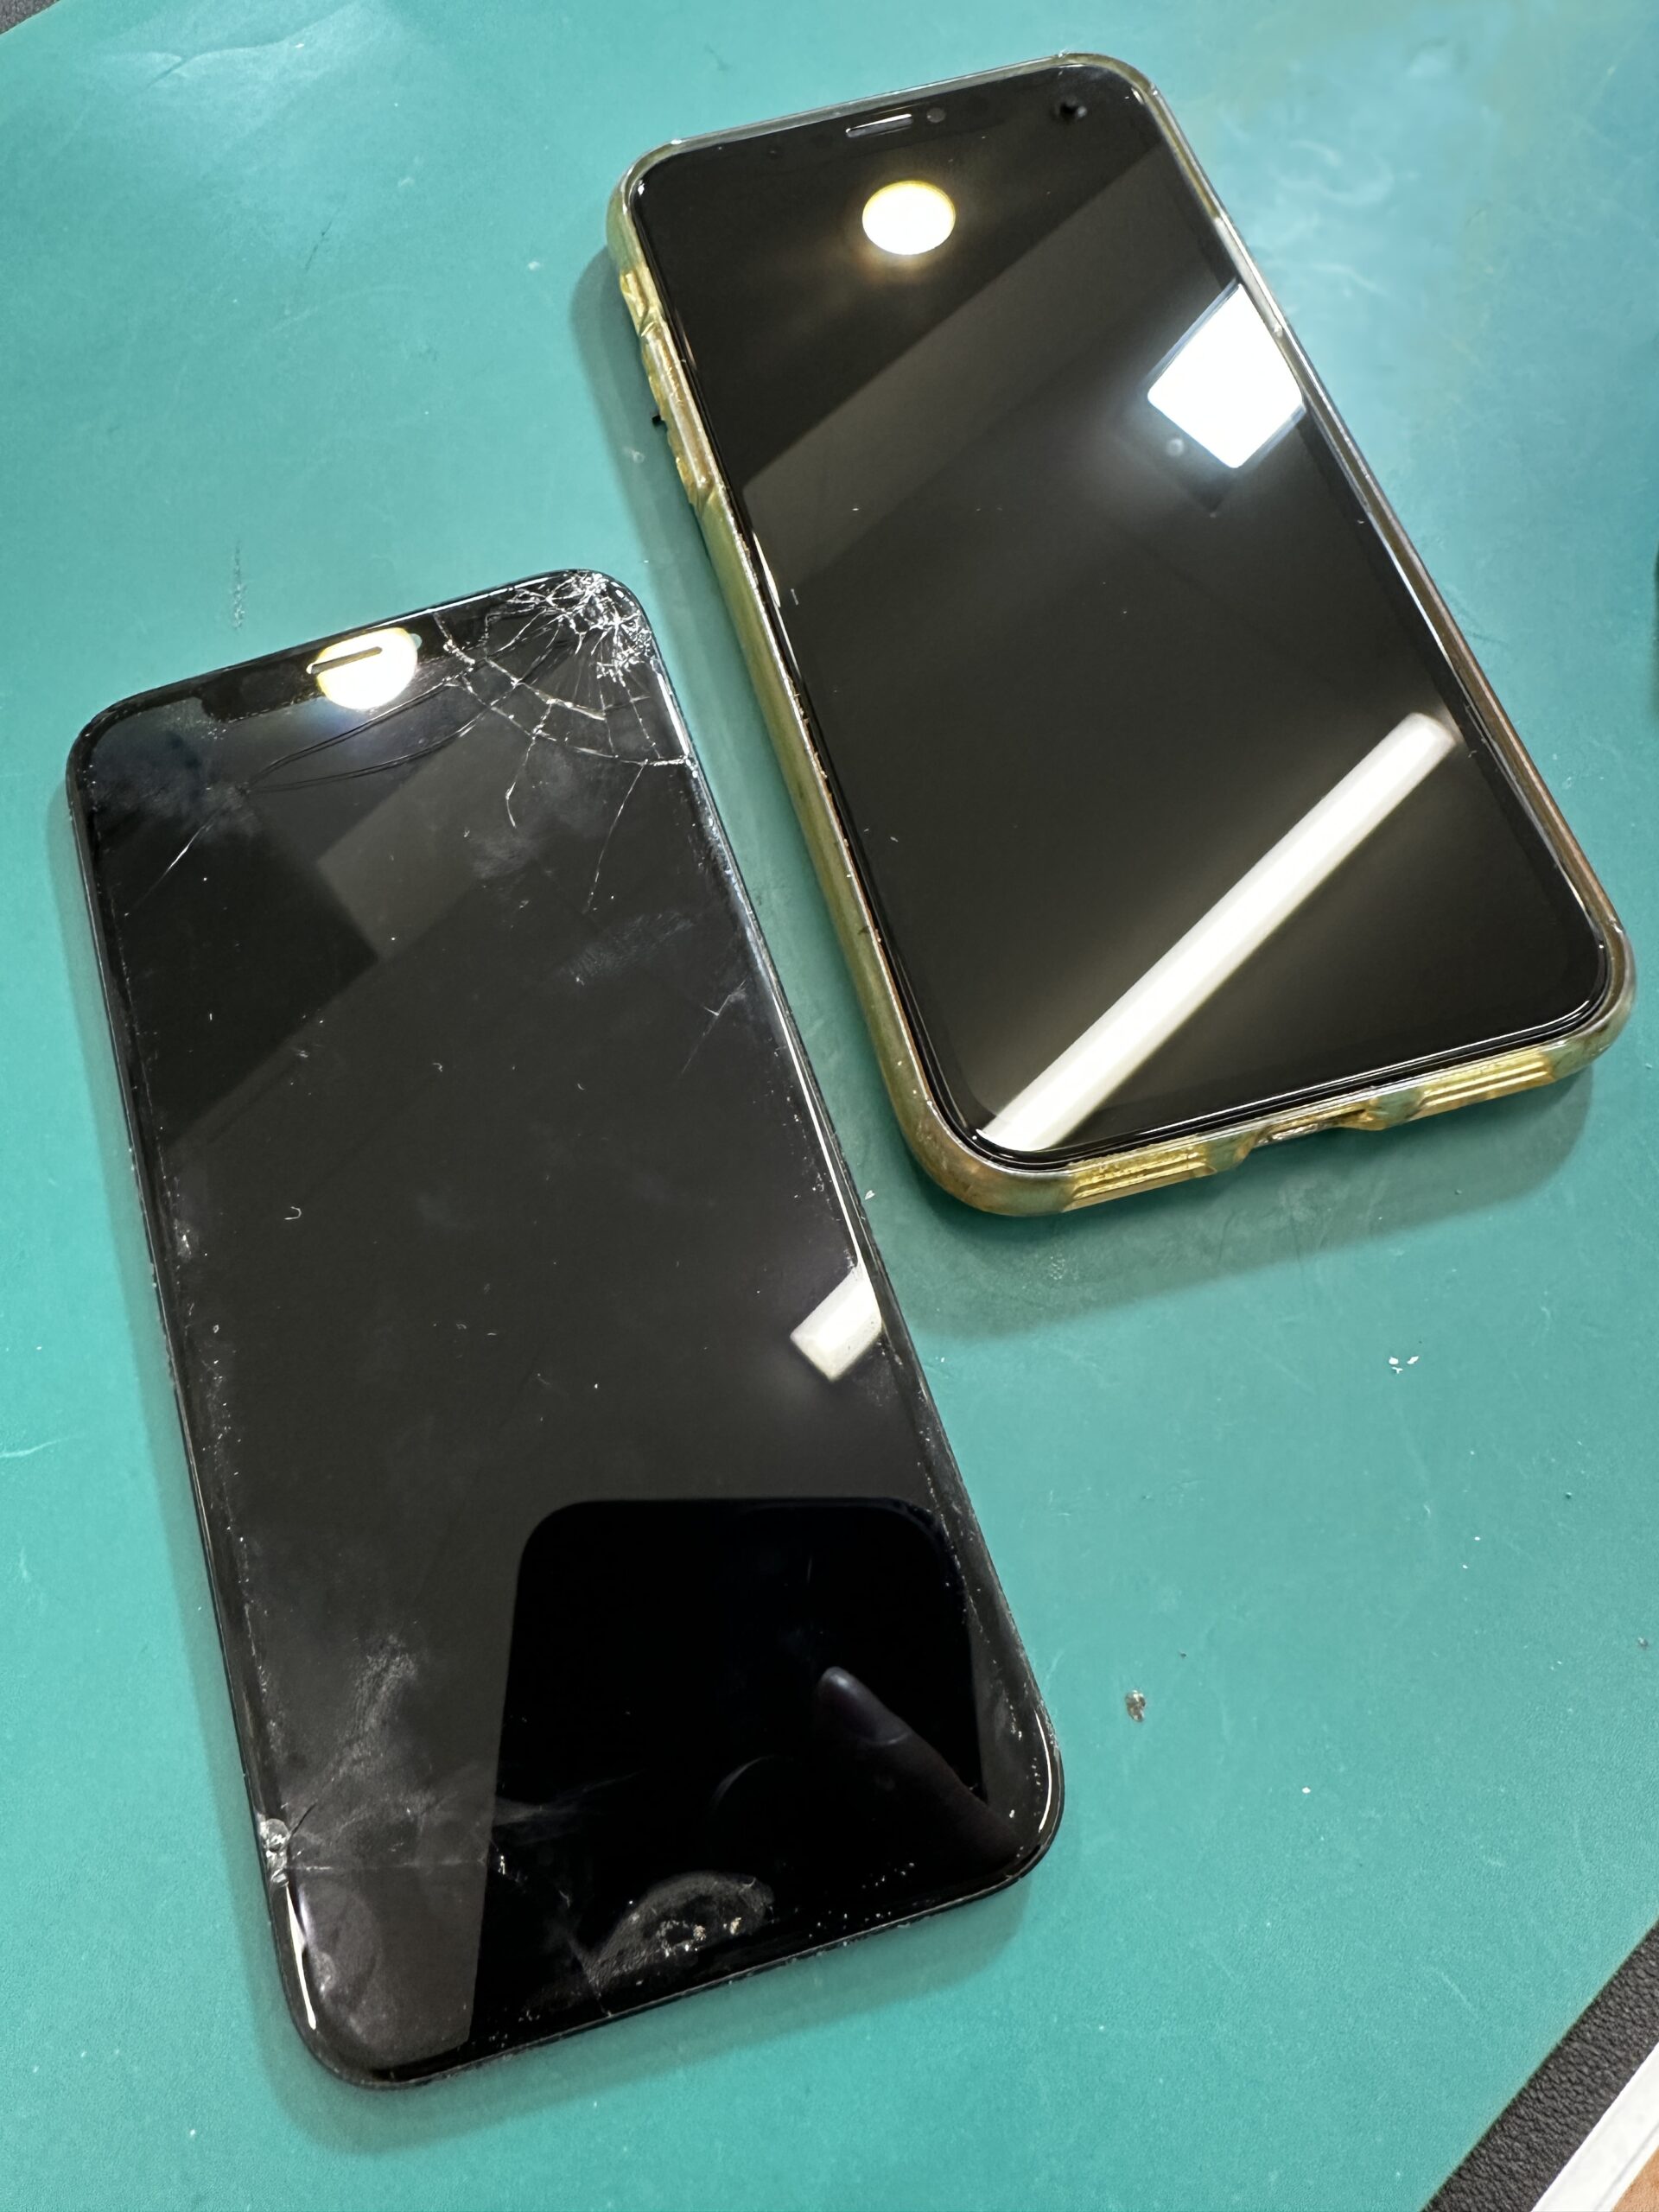 松戸店: iPhoneXS割れ画面迅速修理サービス